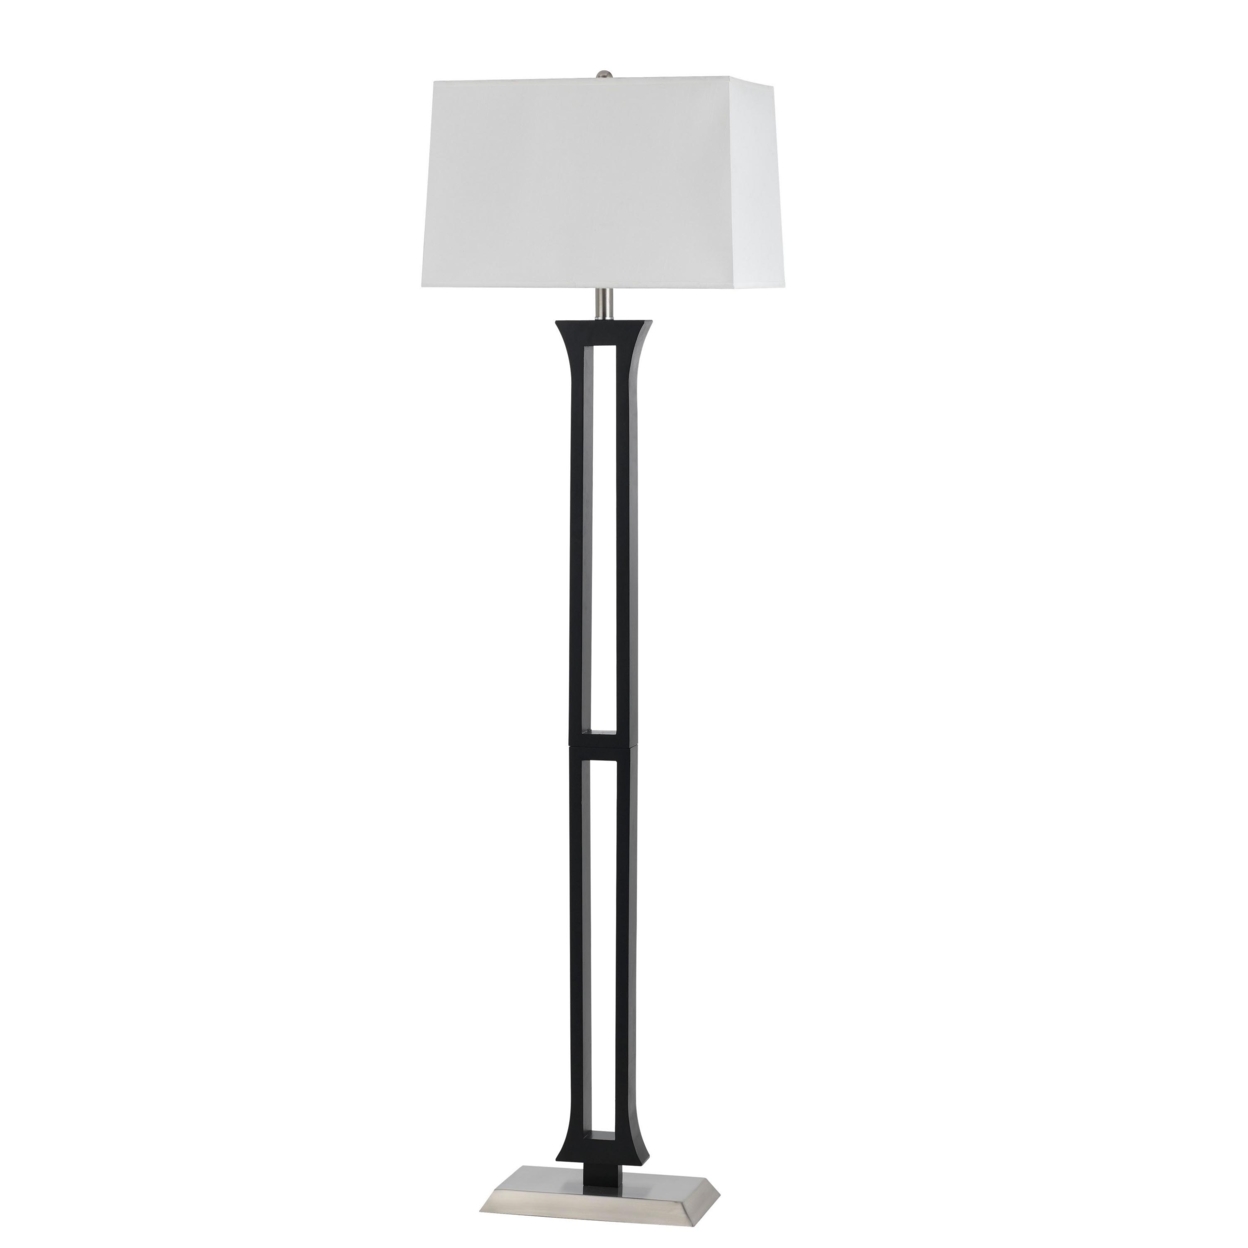 100 Watt Metal Body Floor Lamp With Square Fabric Shade, Black And White- Saltoro Sherpi